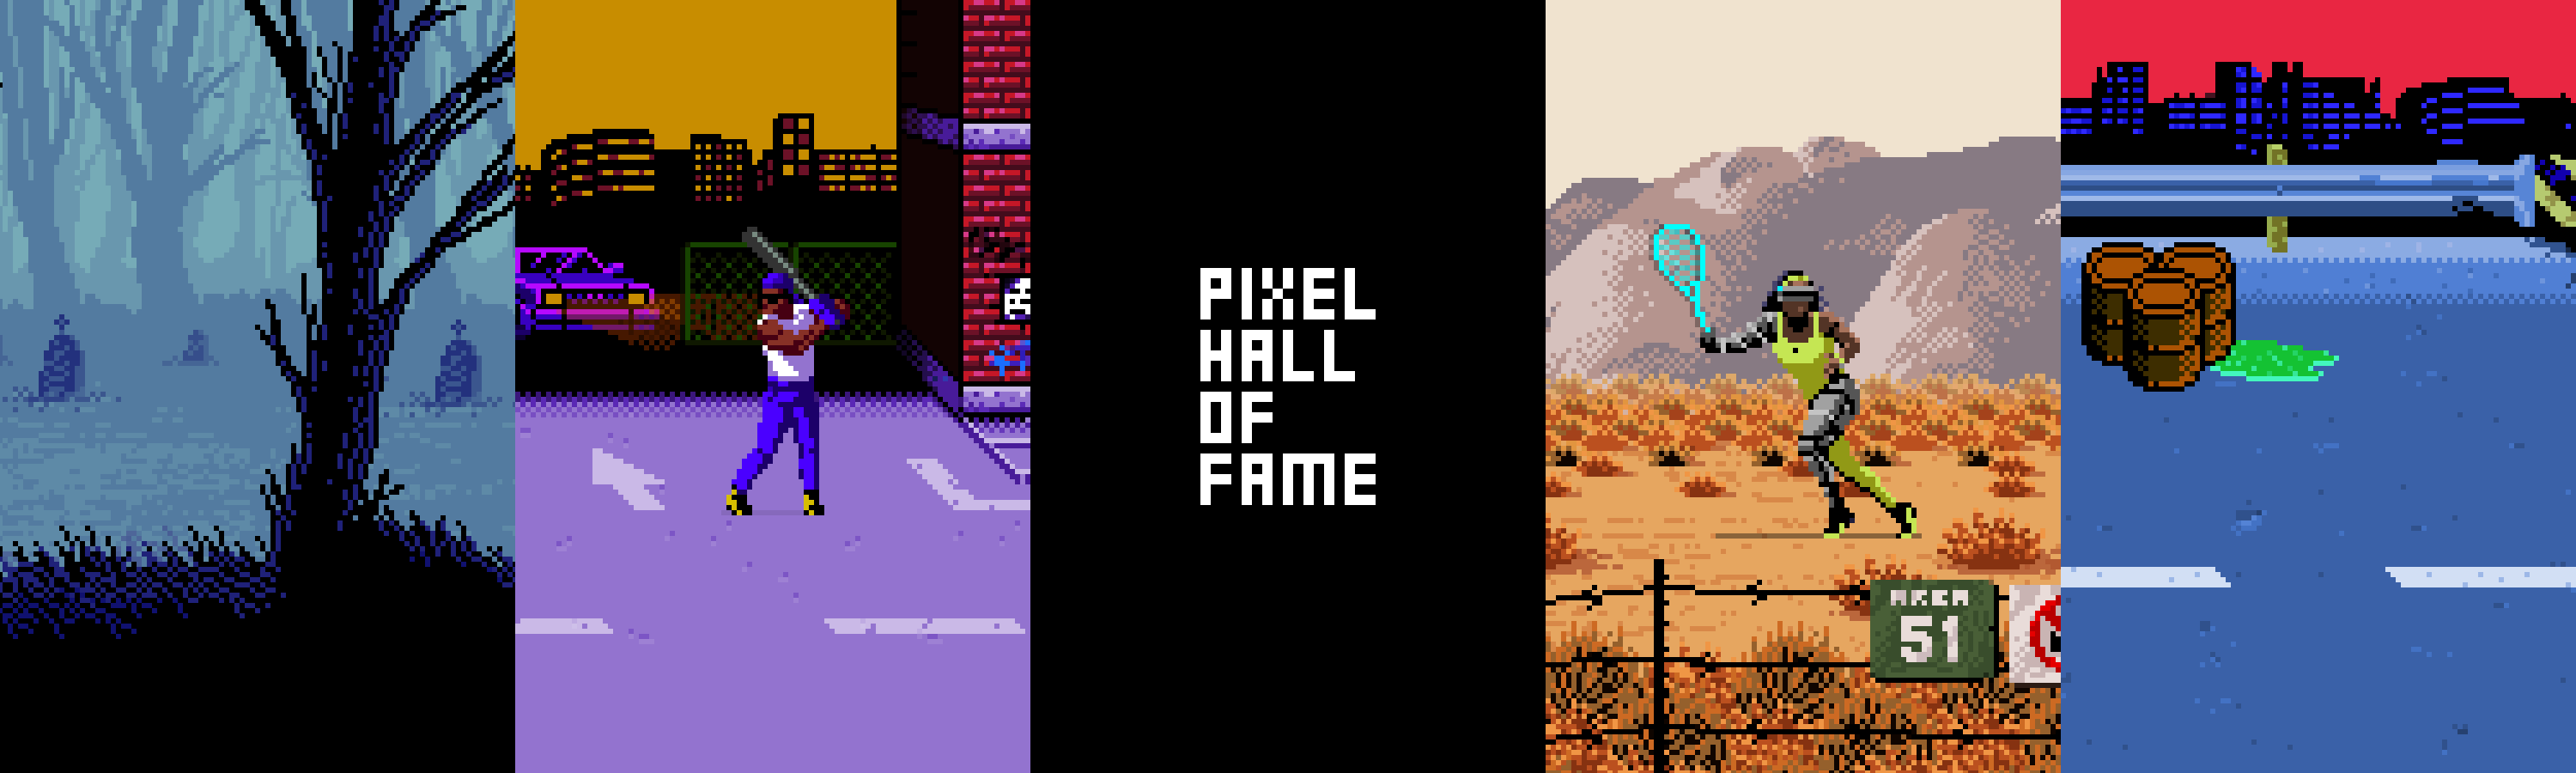 PixelHallofFame banner